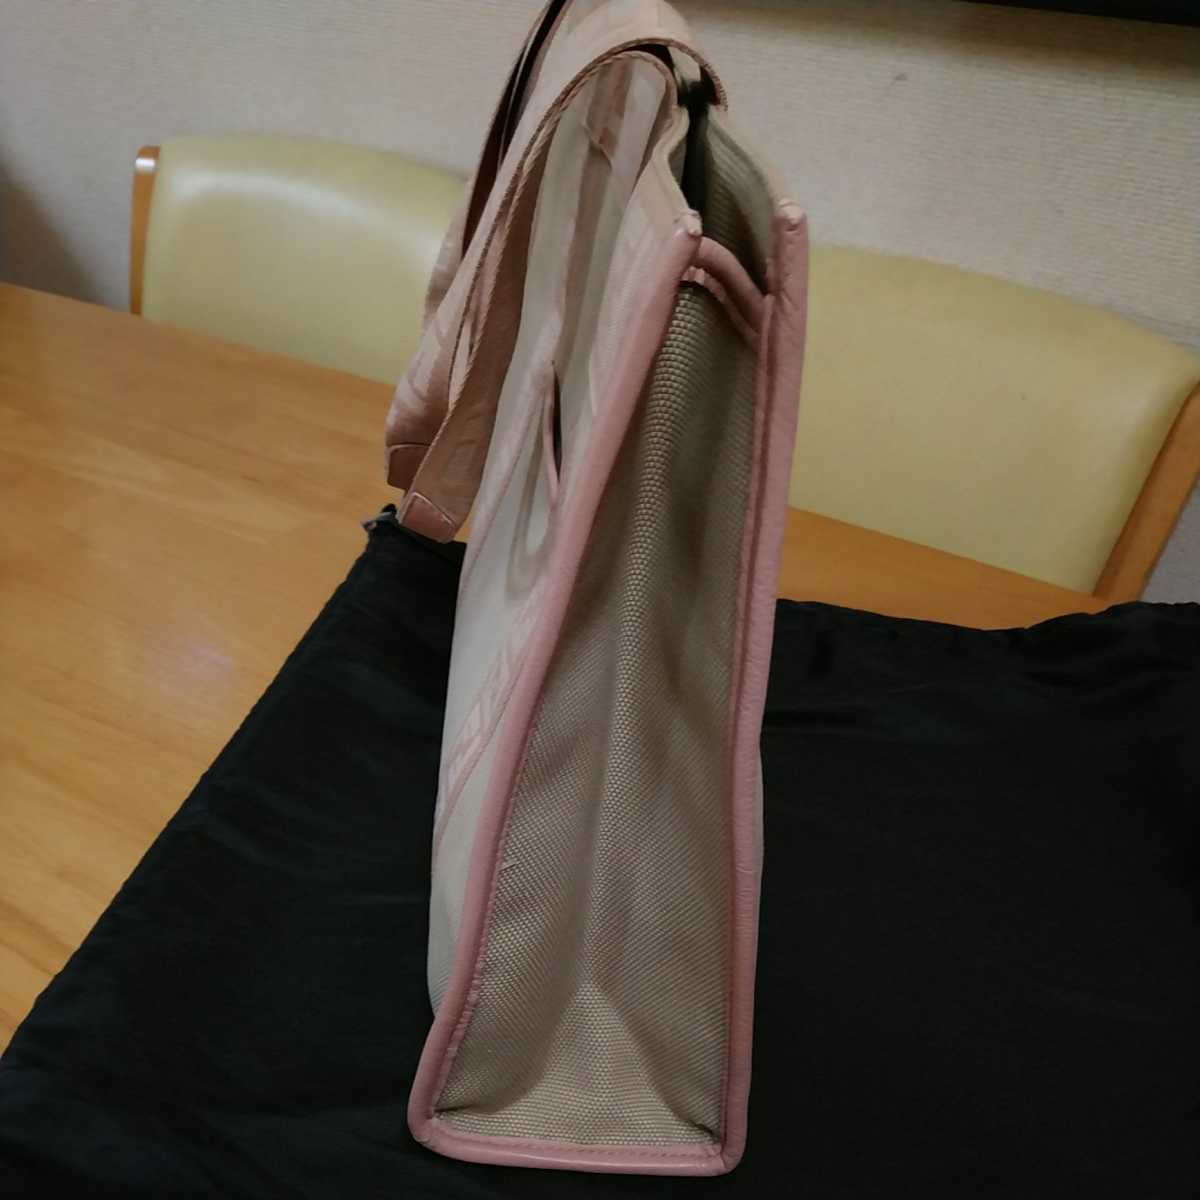 中古 FENDI フェンディ トートバッグ キャンバス ピンク Fendi bag ショルダーバッグ 保存袋付き 送料無料_画像5